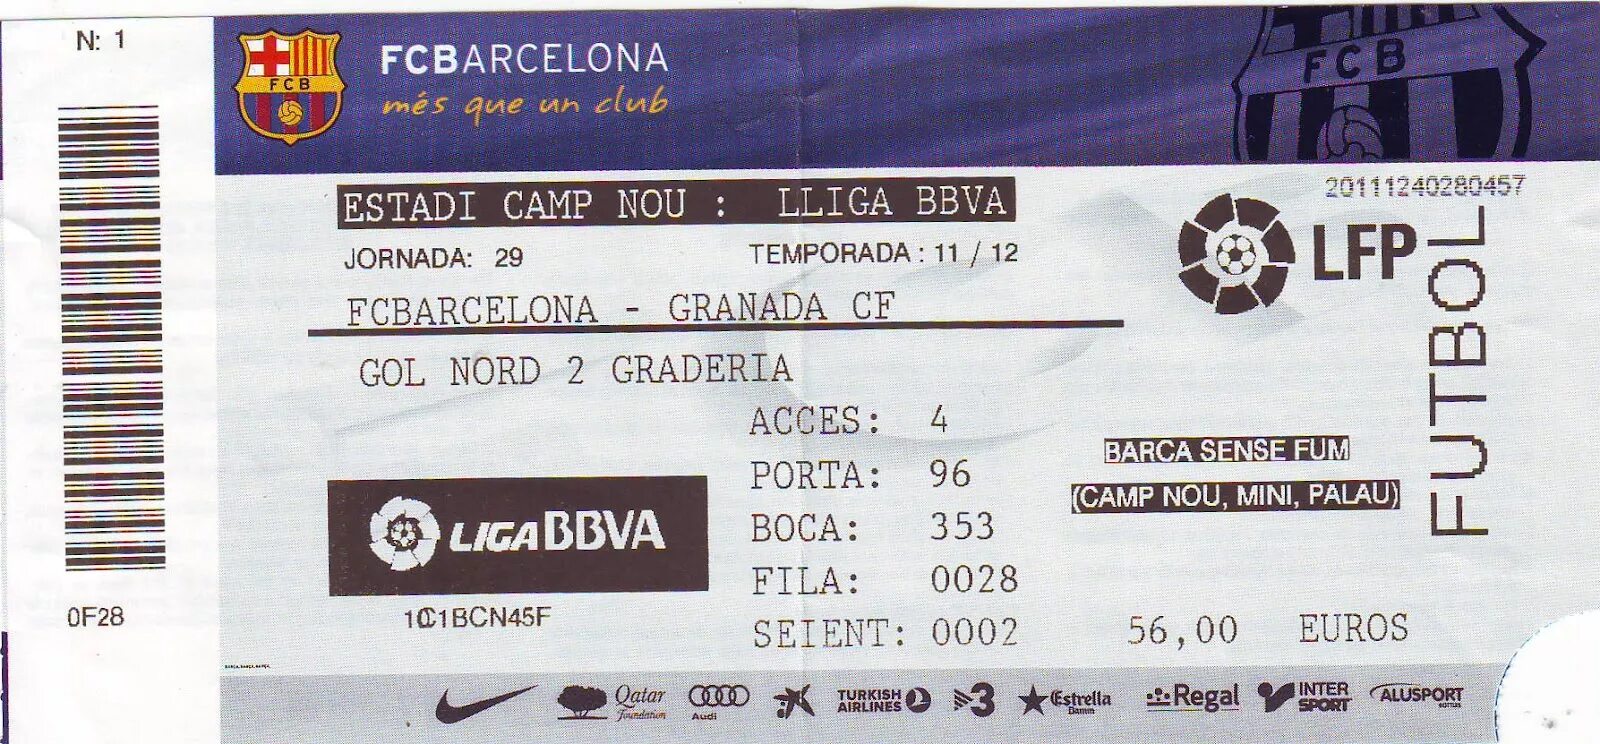 Билет на матч Барселоны. Билет на матч Барселоны на Камп ноу. Электронный билет на футбол Барселоны на Камп ноу. Football Match ticket.